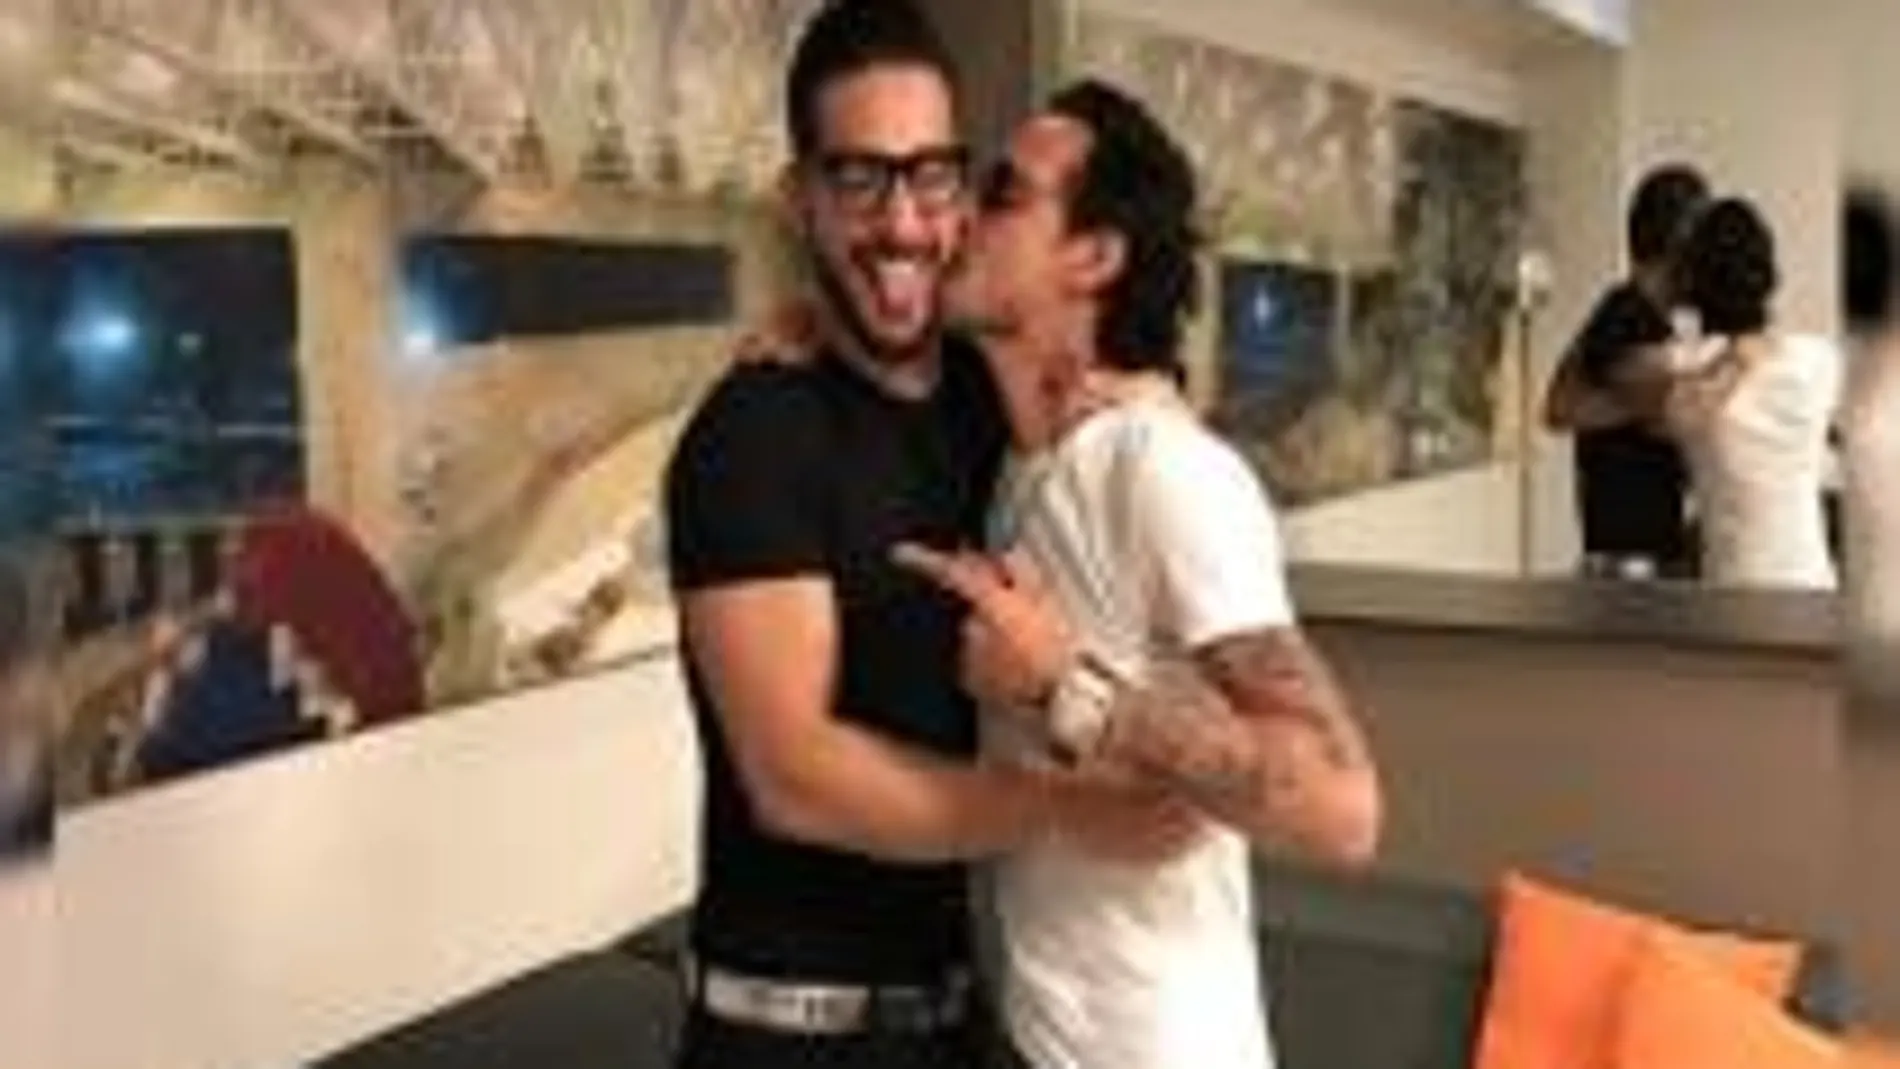 El polémico beso en la boca de Marc Anthony y Maluma